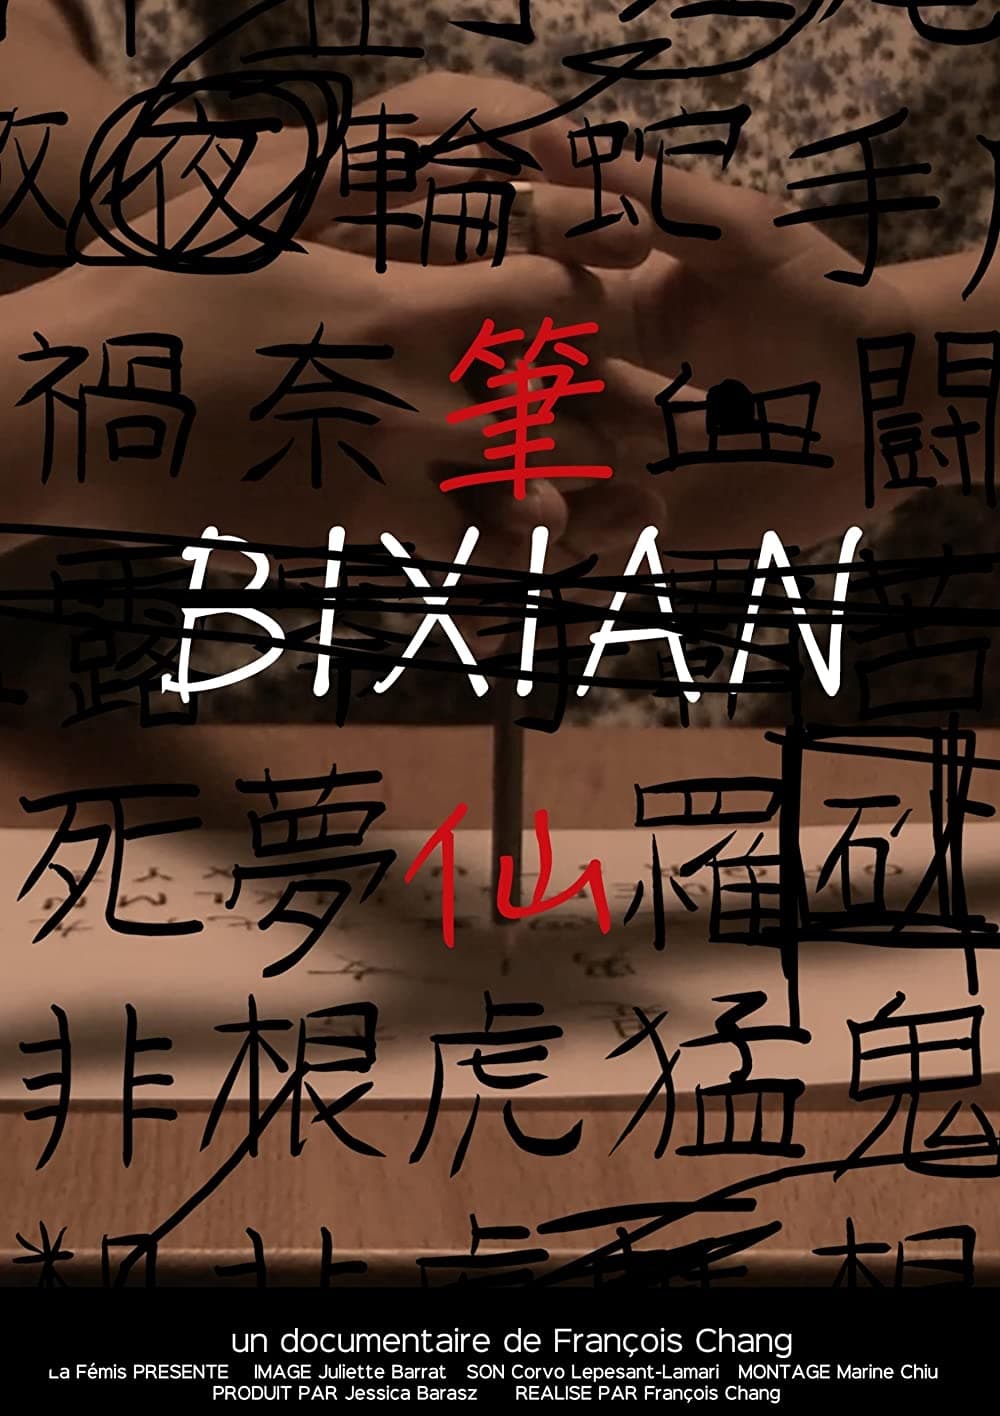 Bixian